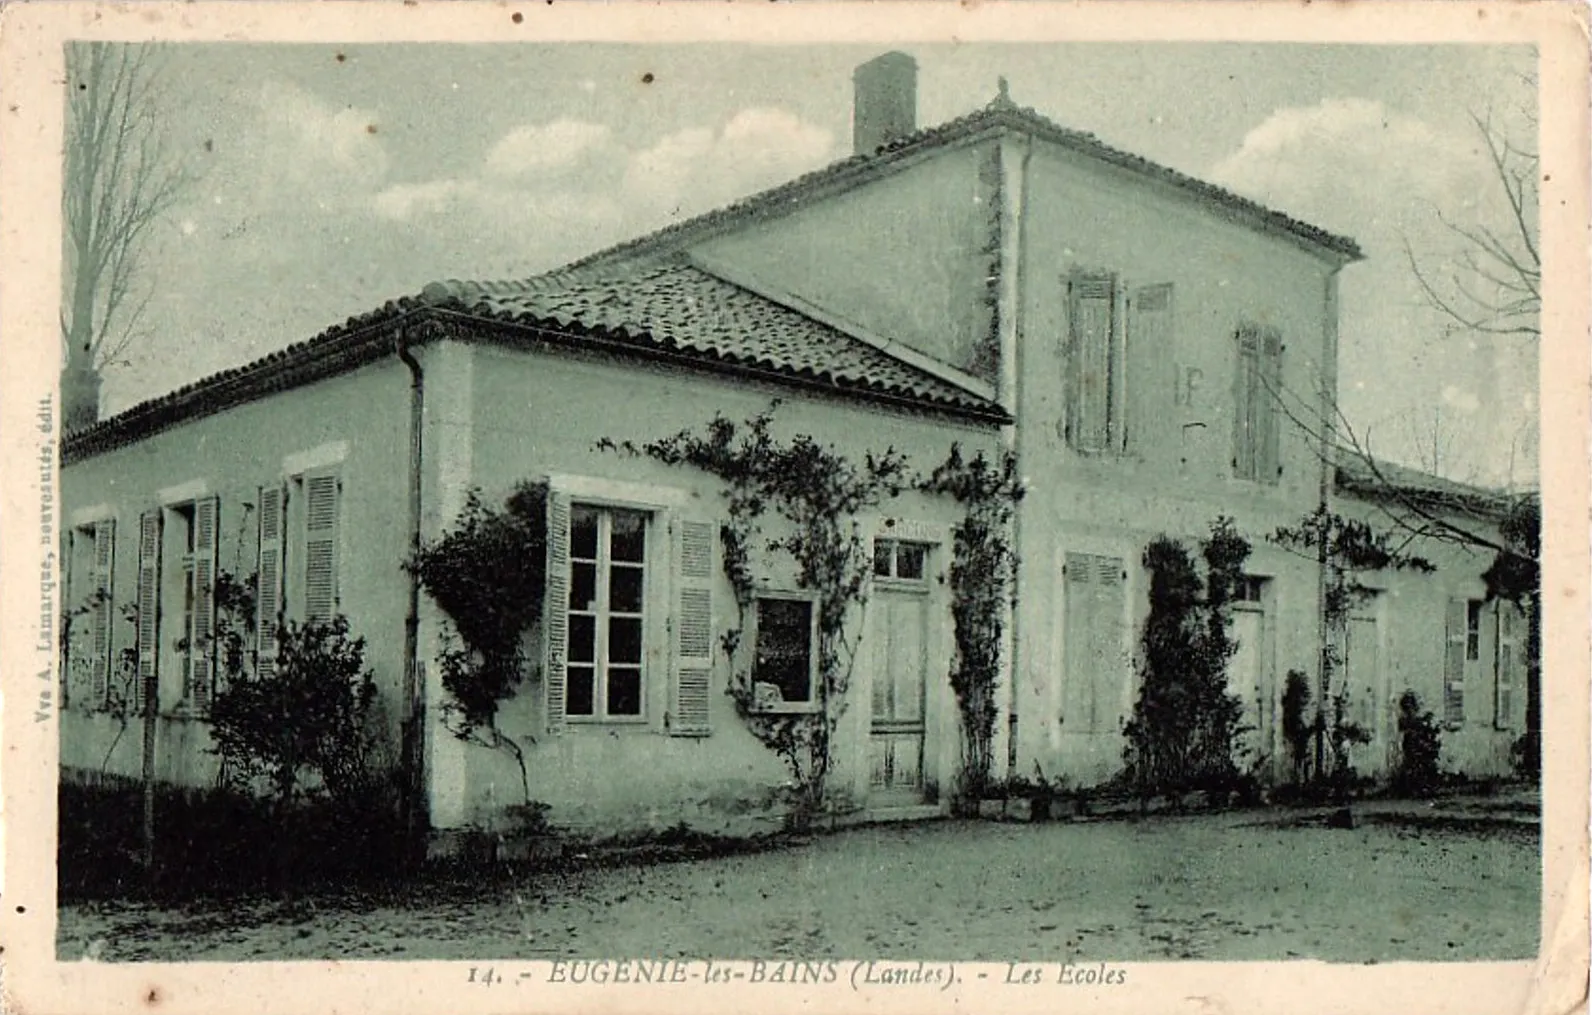 Photo showing: Eugénie-les-bains (Landes) - Ecole